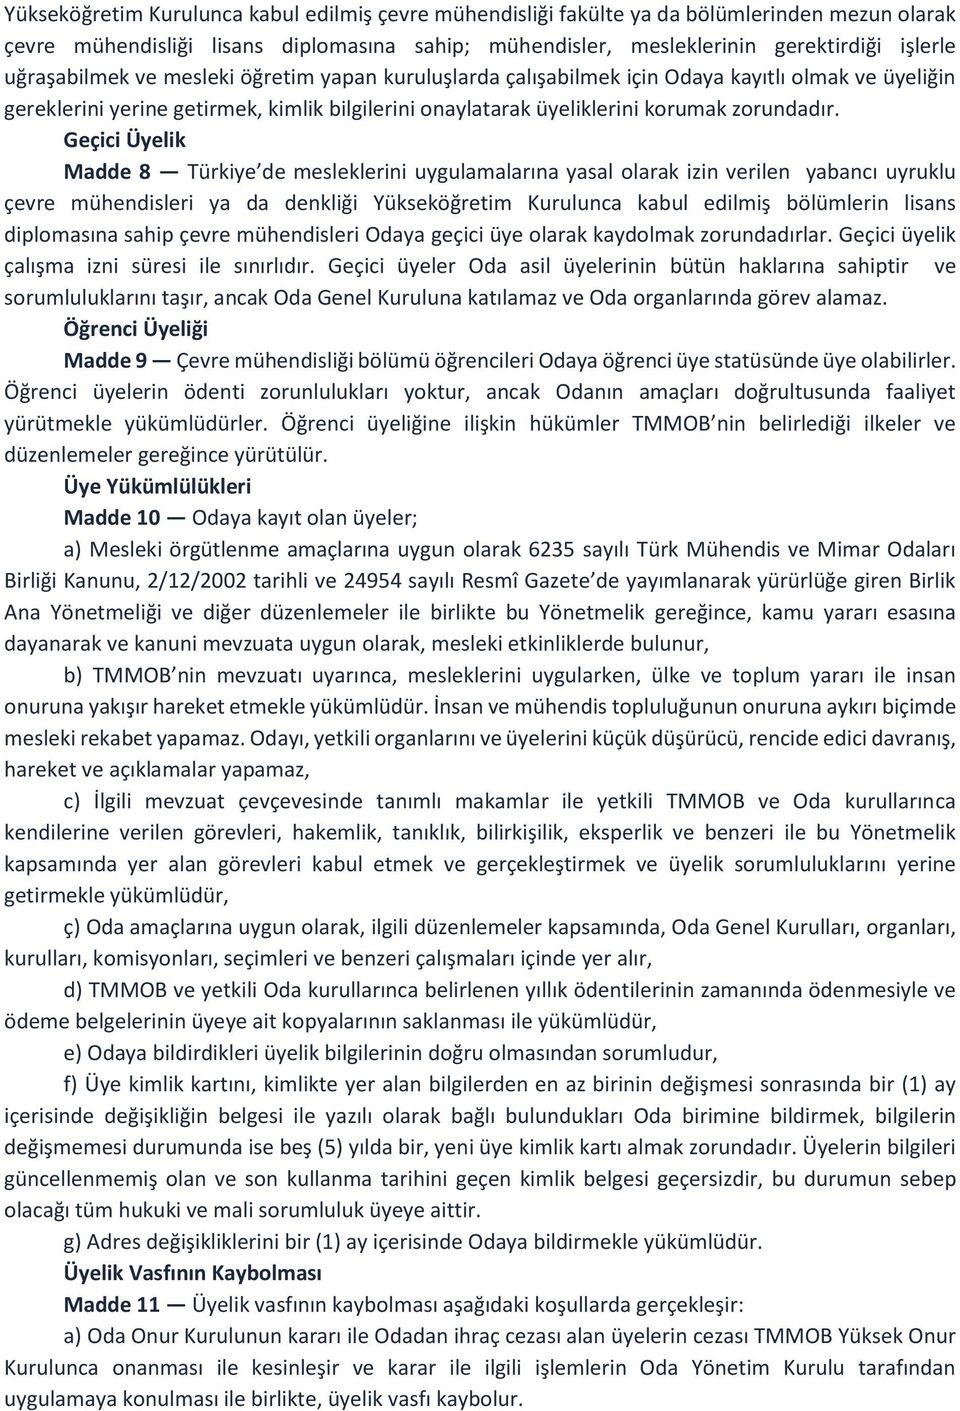 Geçici Üyelik Madde 8 Türkiye de mesleklerini uygulamalarına yasal olarak izin verilen yabancı uyruklu çevre mühendisleri ya da denkliği Yükseköğretim Kurulunca kabul edilmiş bölümlerin lisans